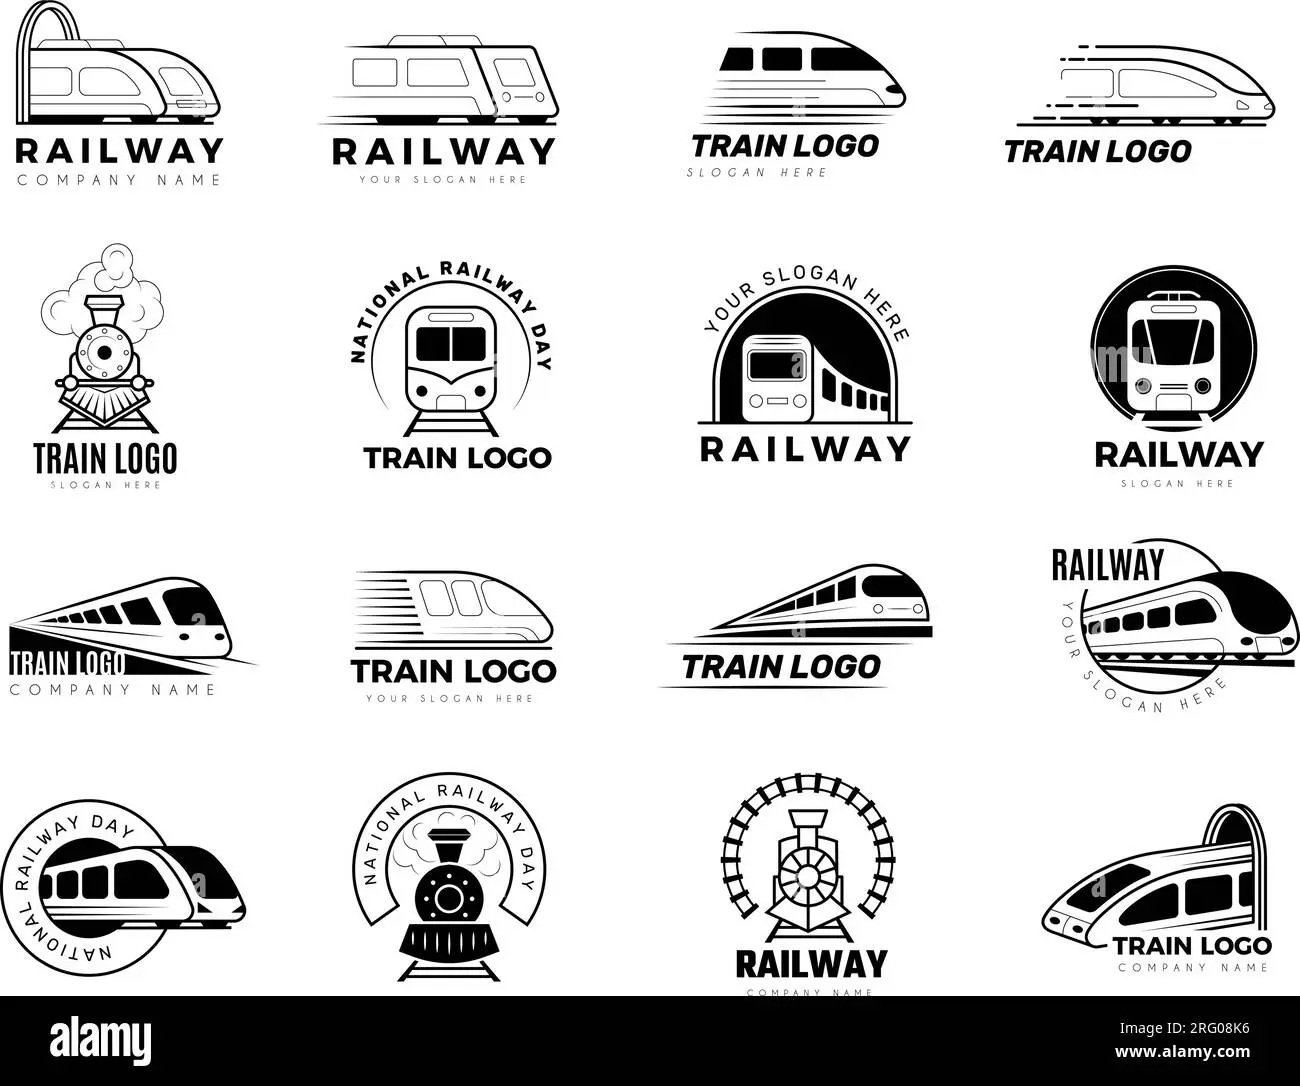 ideas para logos ferroviario - Cómo elegir un buen logo